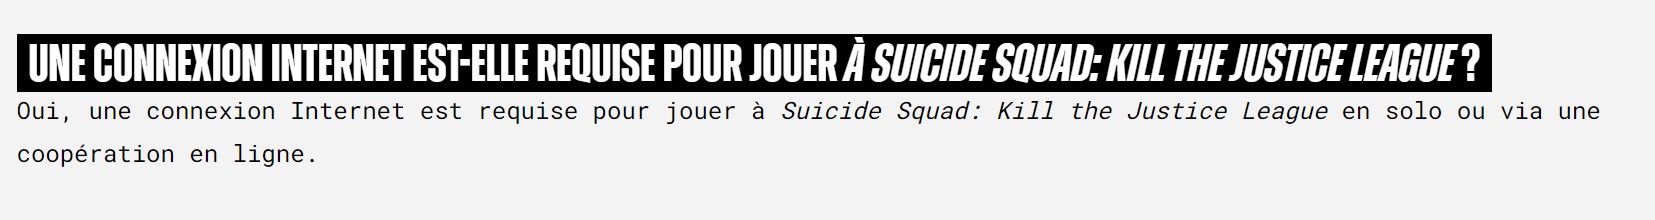 suicide squad FAQ 